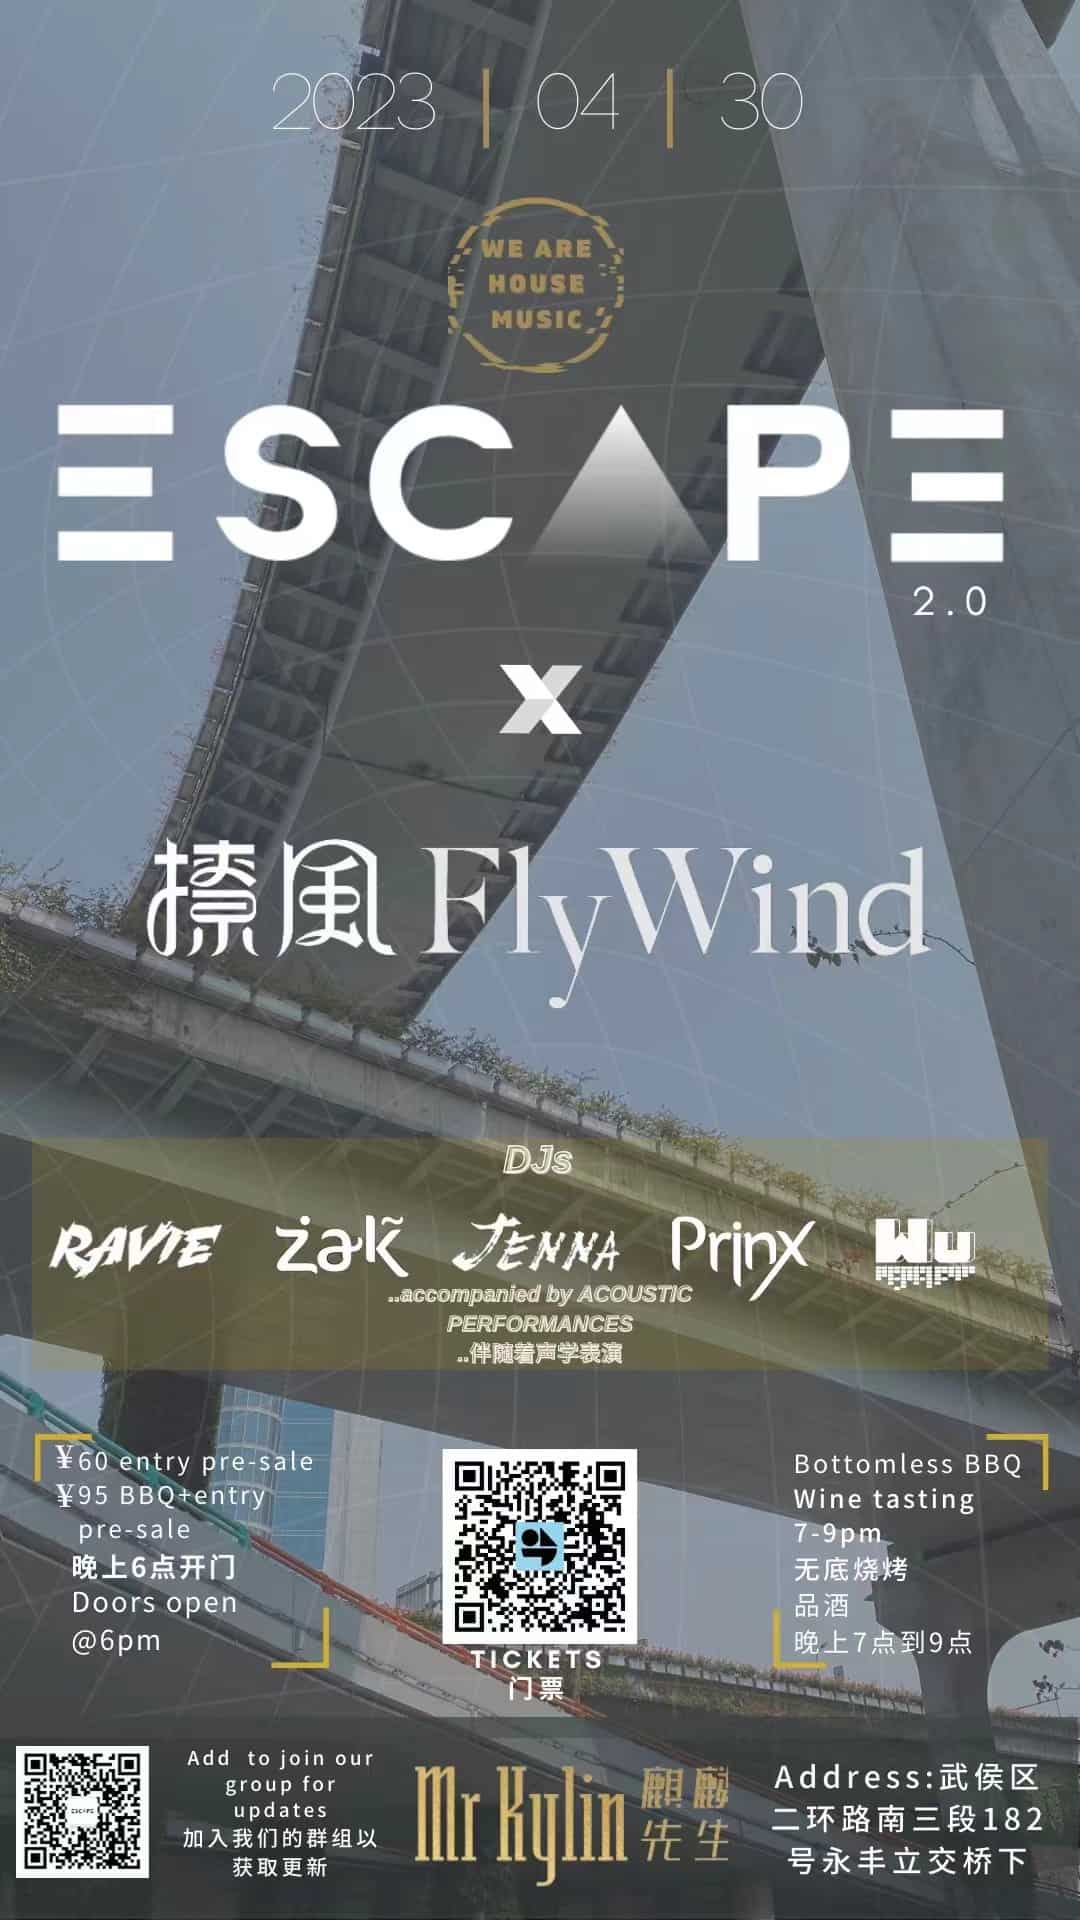 Chengdu Escape 2.0 house music event chengdu expat 1